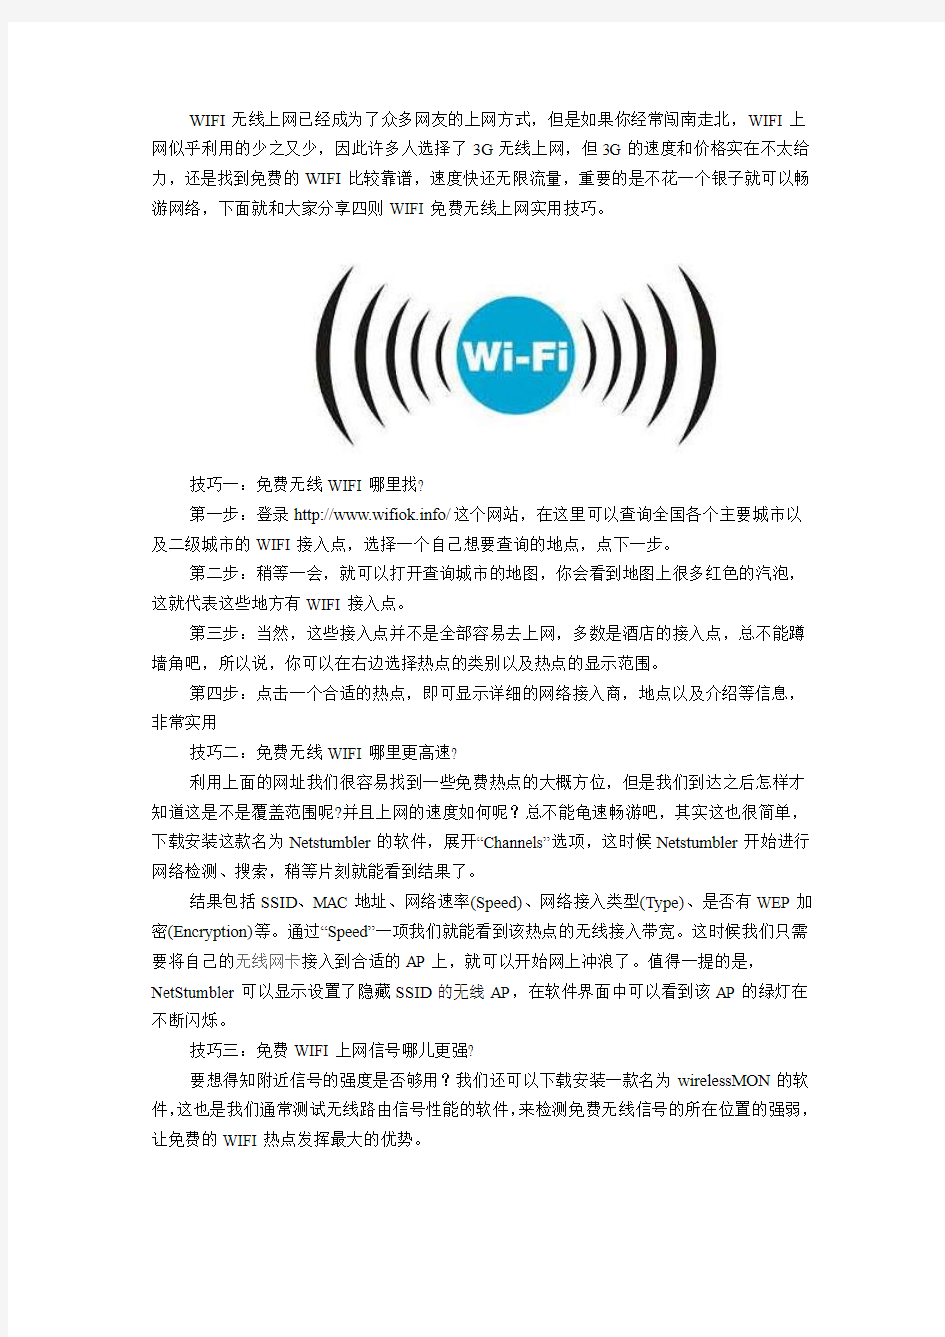 WIFI免费无线上网实用技巧